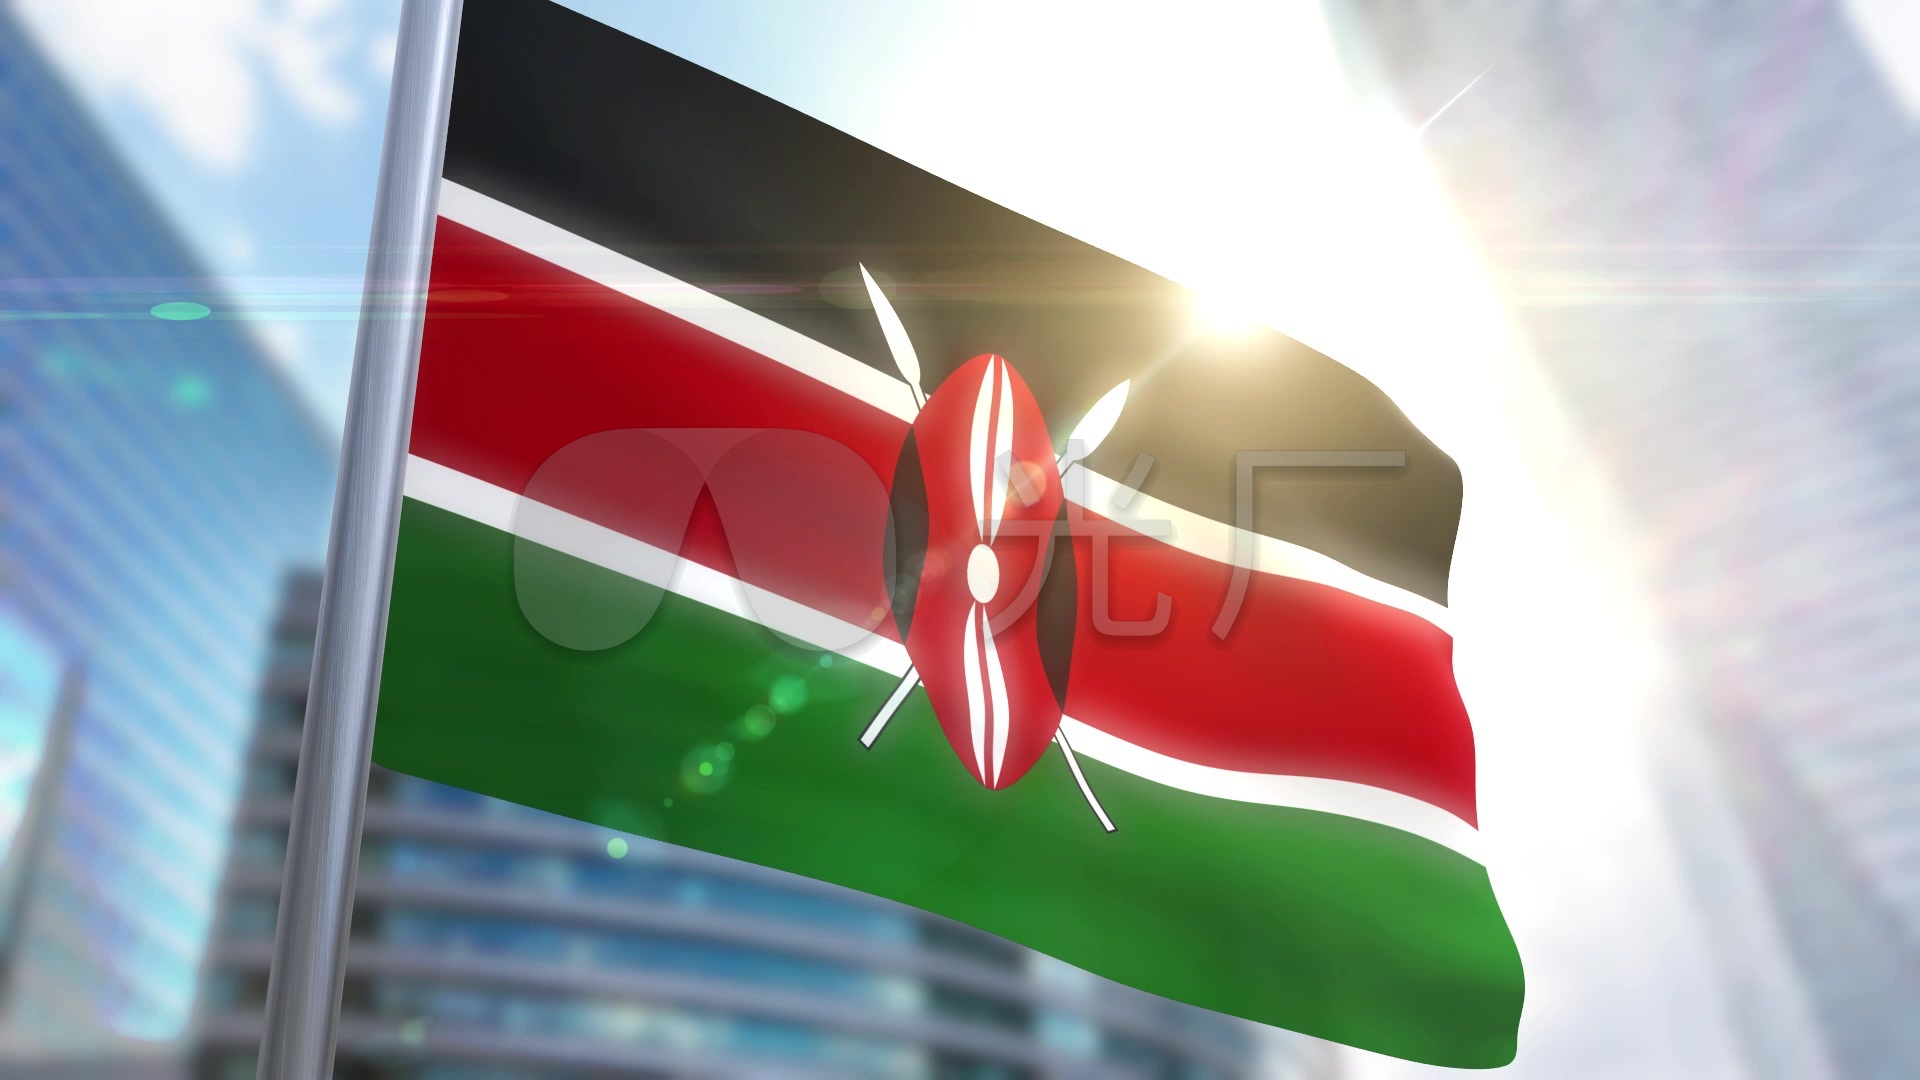 肯尼亚旗帜肯尼亚国旗旗帜旗帜飘飘